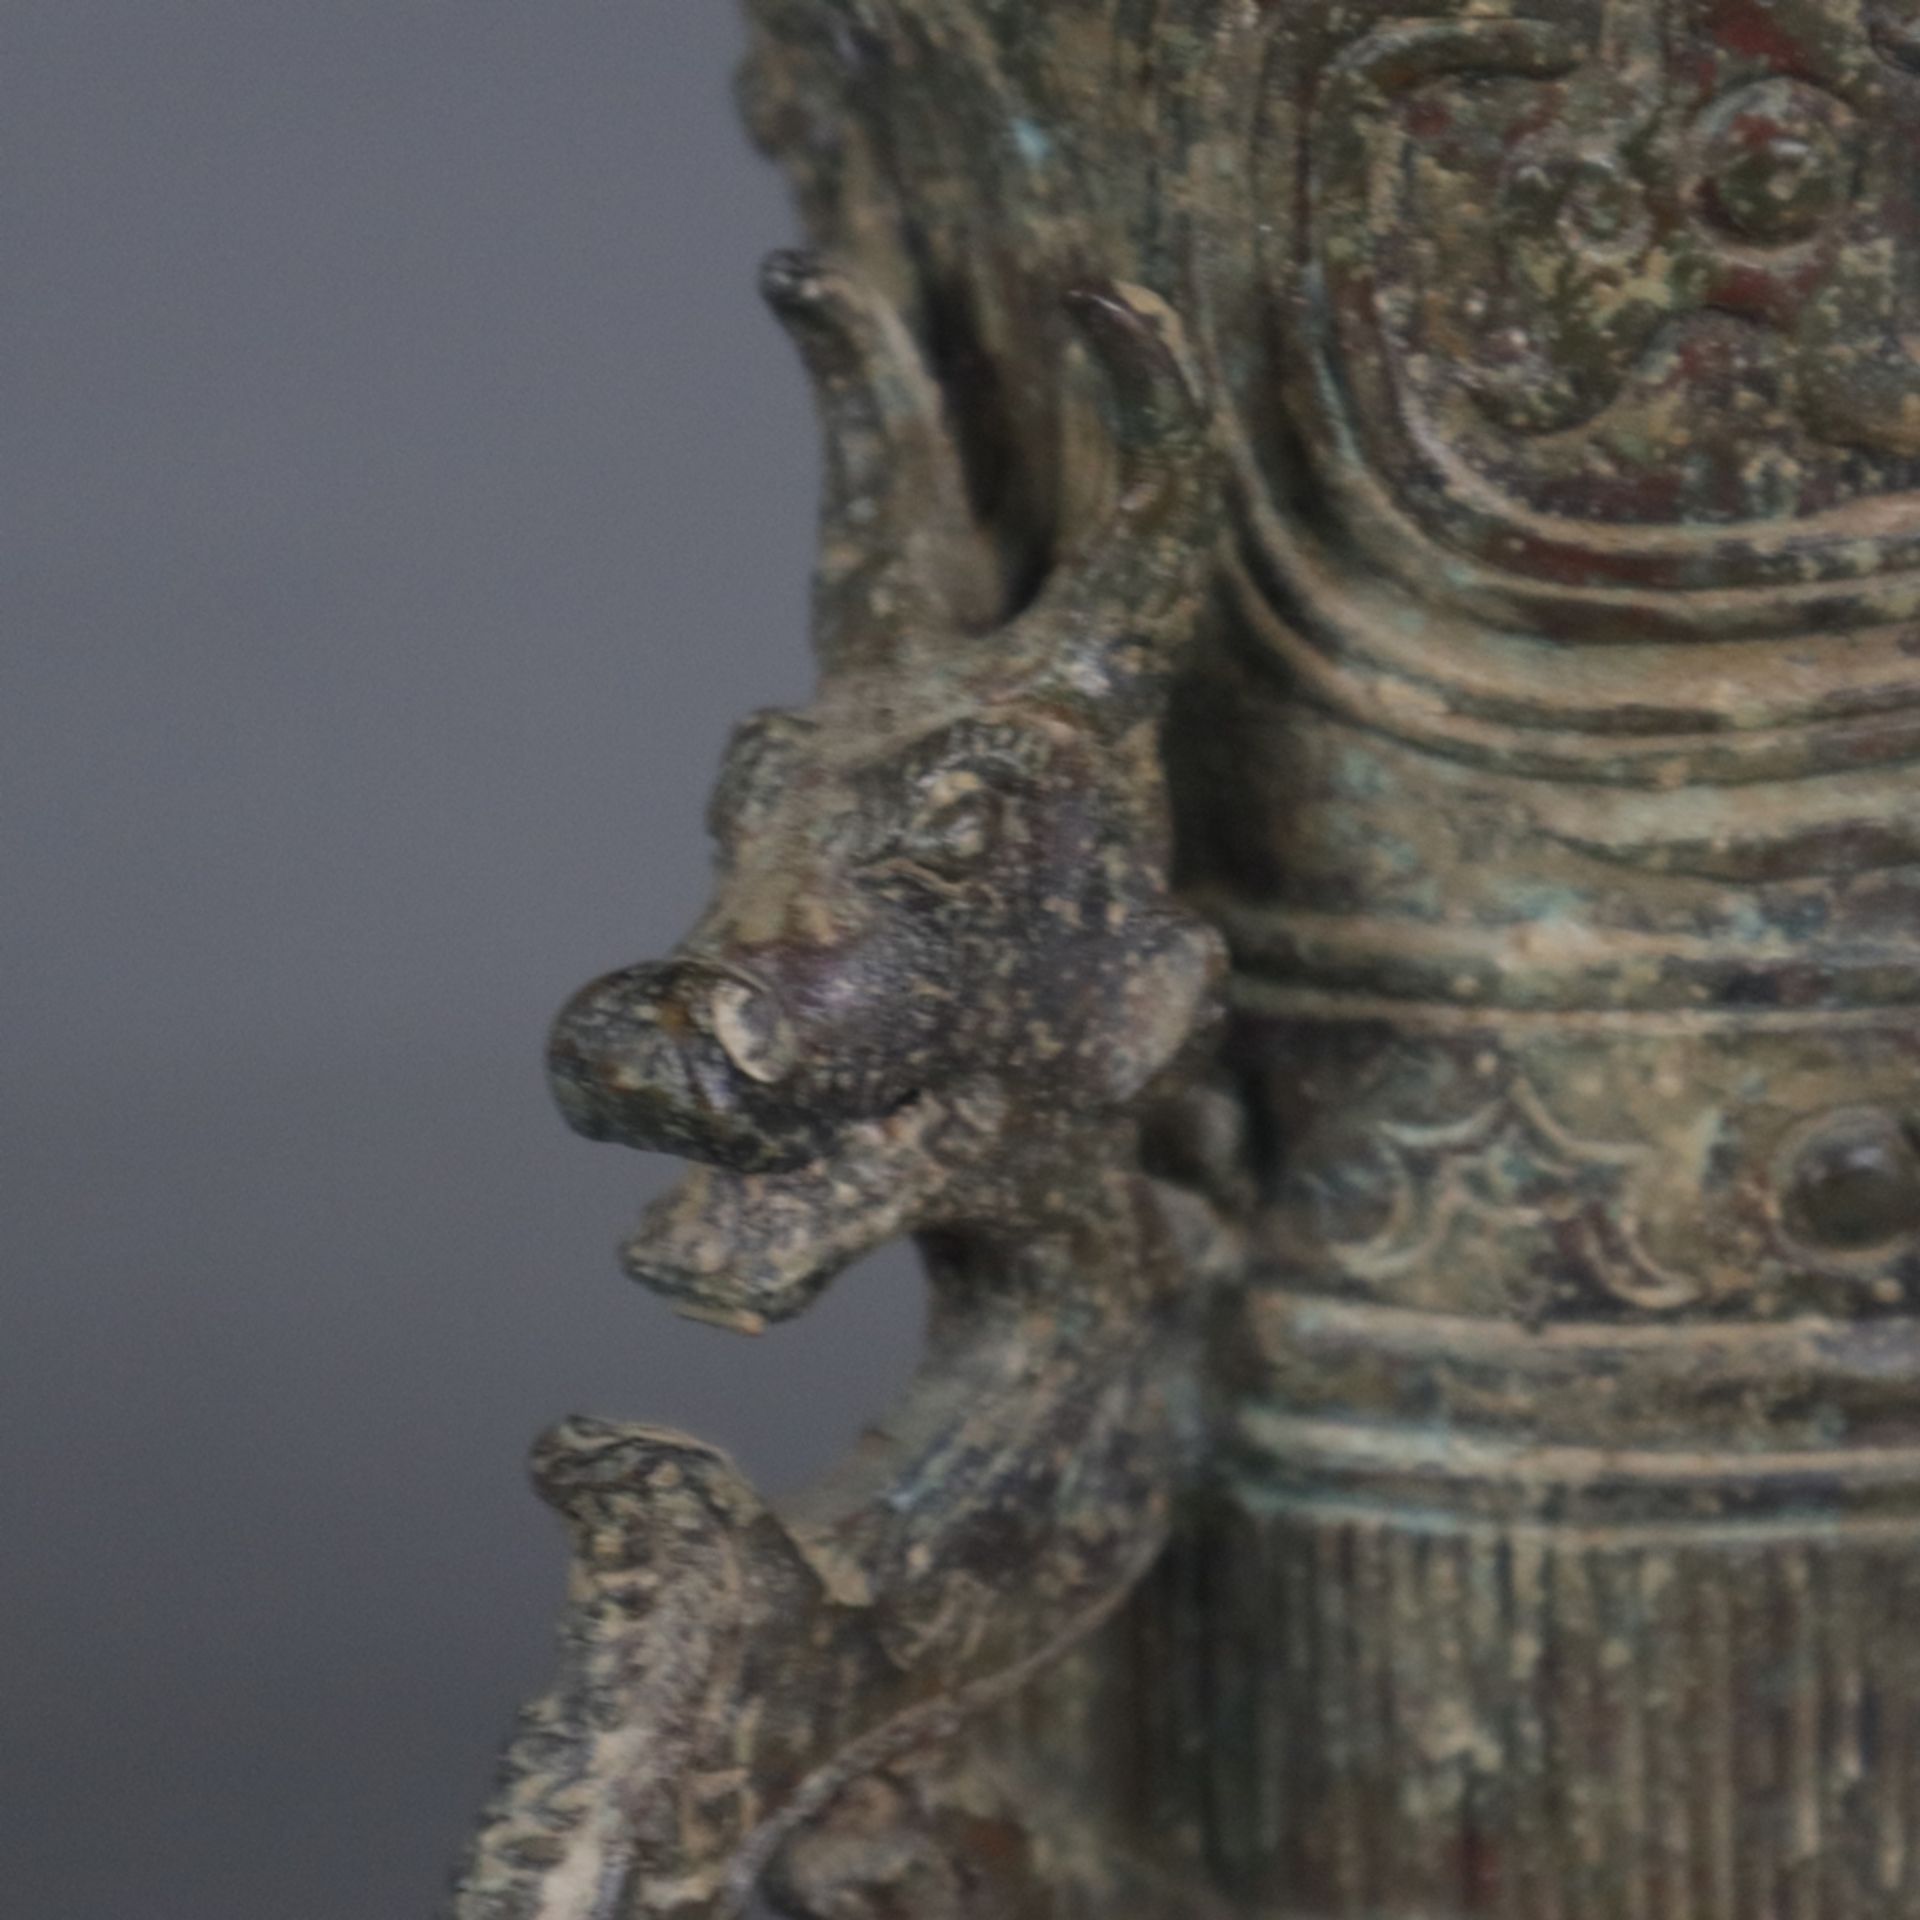 Gefäß in Vogelform - China, in der Art der „zun“-Gefäße aus der Shang-Zeit, gegossene Bronzelegieru - Image 6 of 8